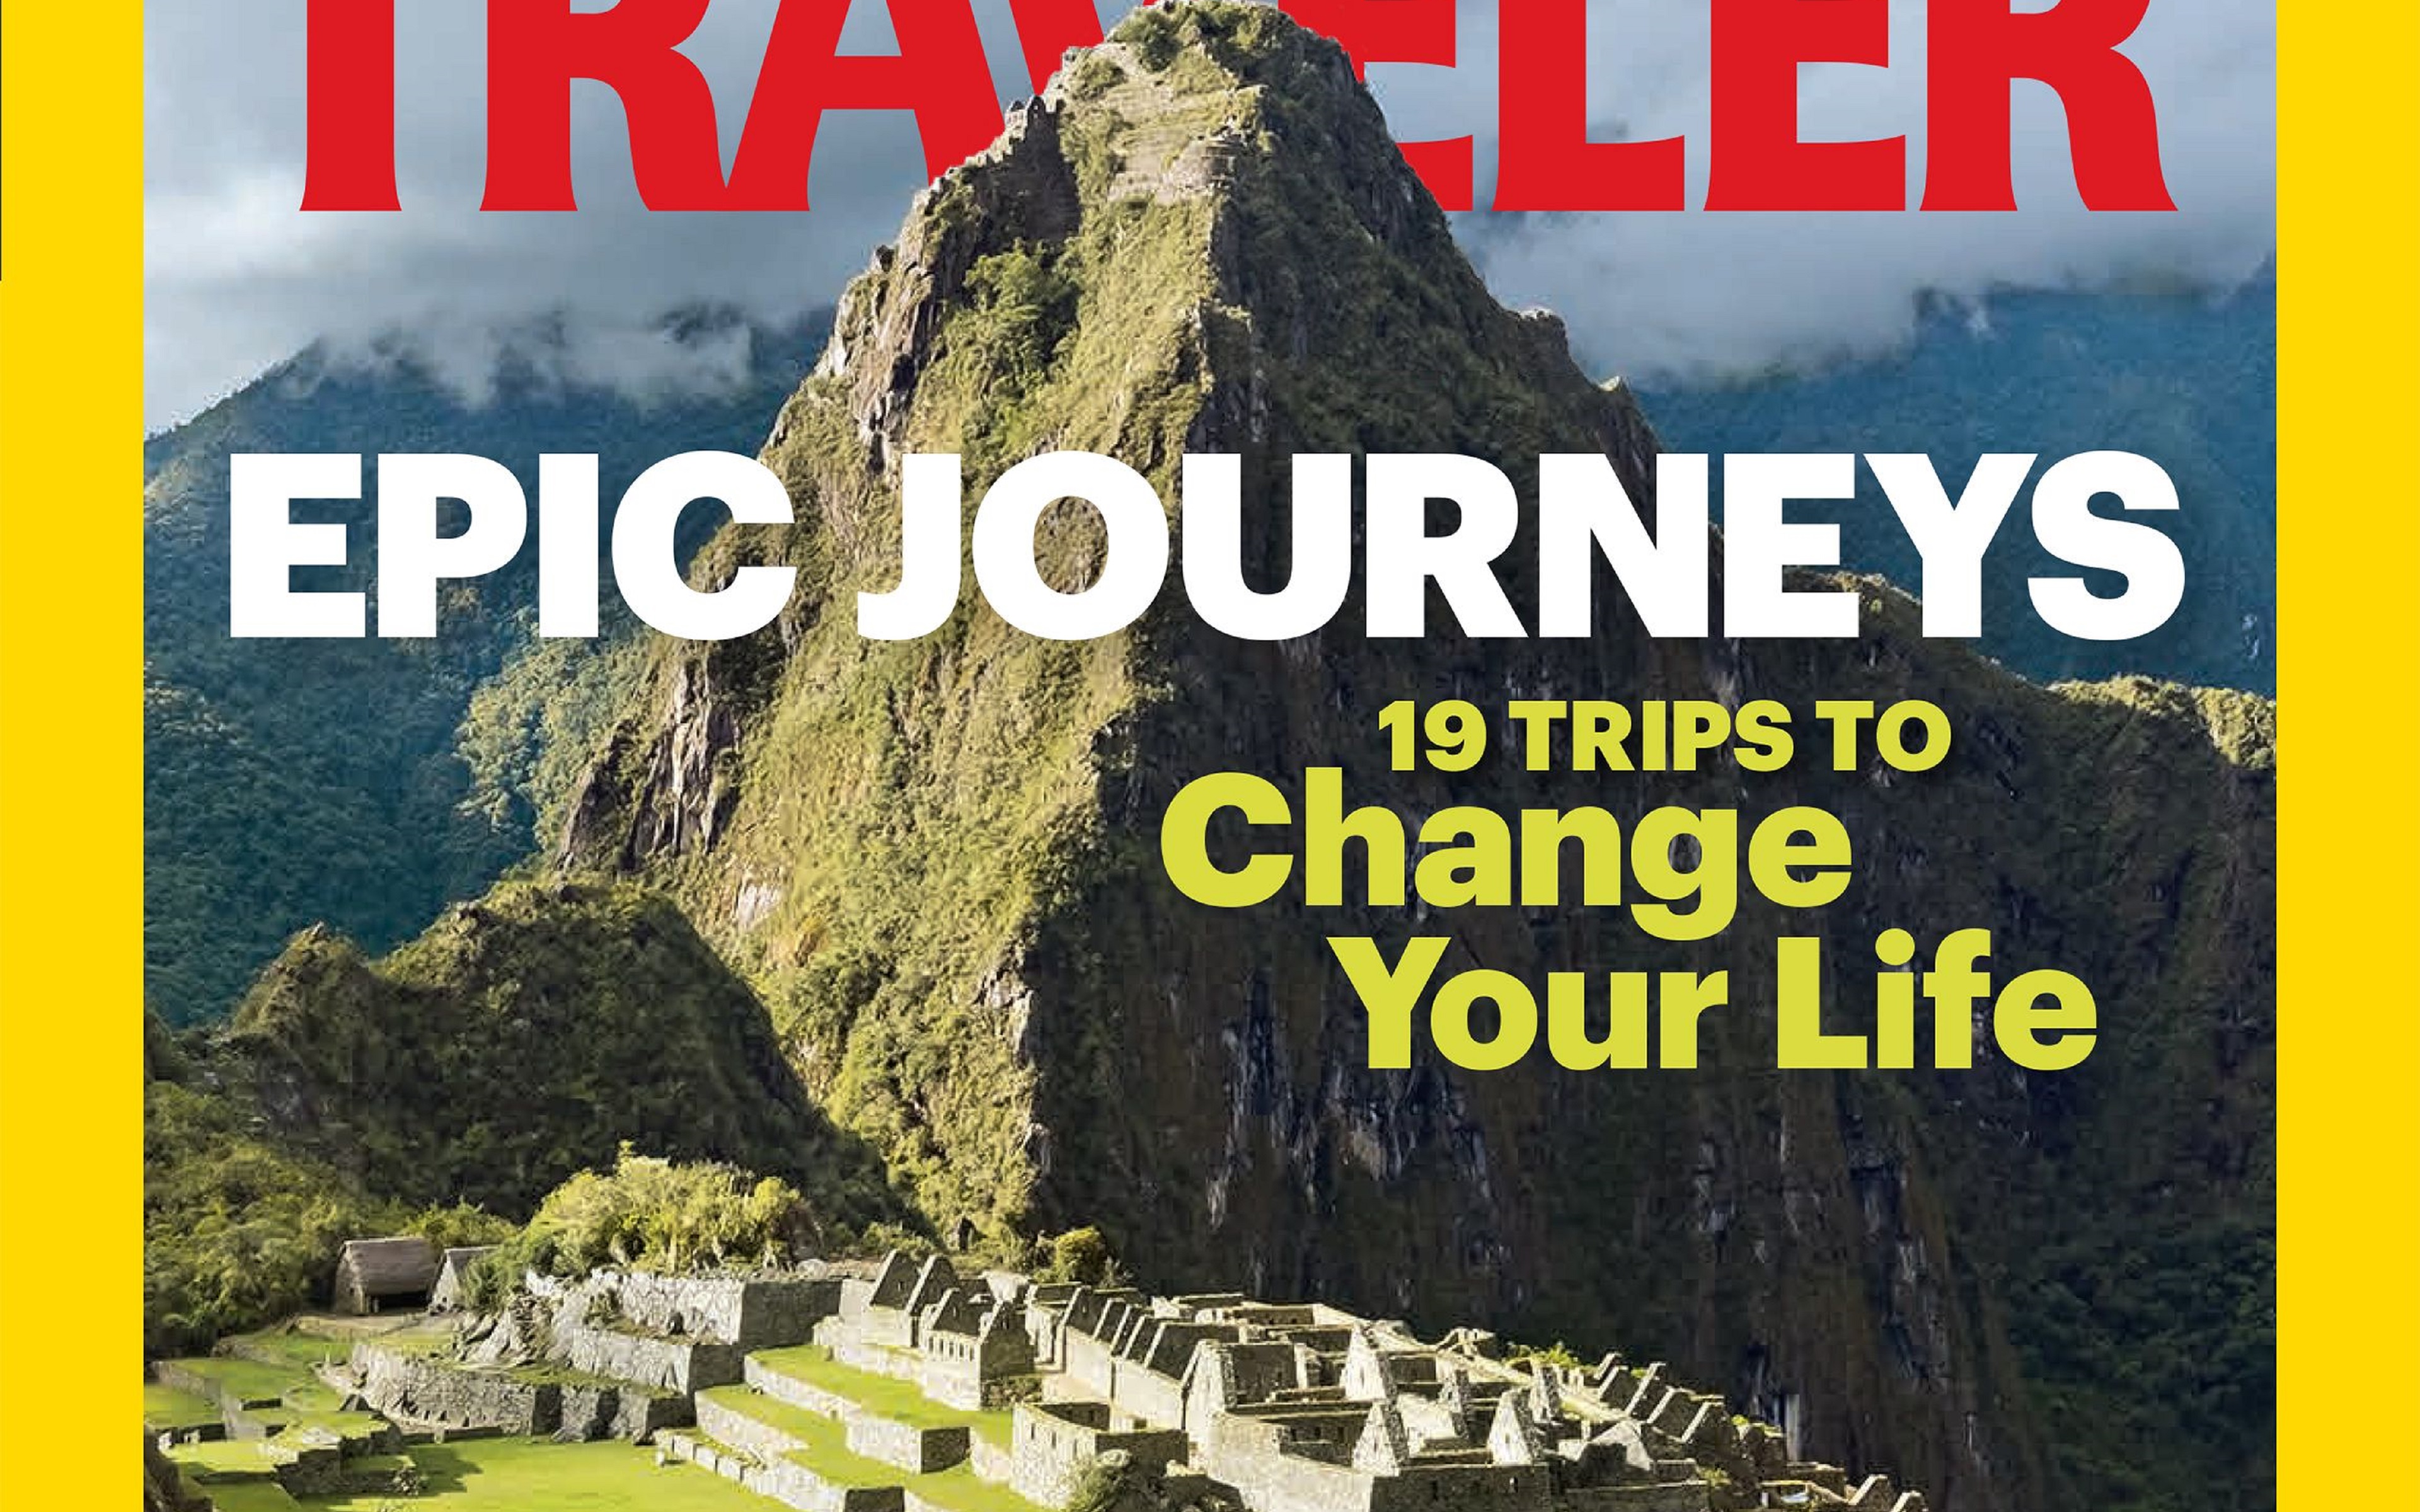 a23203cb202095be748315456996679f 1 - Peru: Machu Picchu shines in National Geographic cover